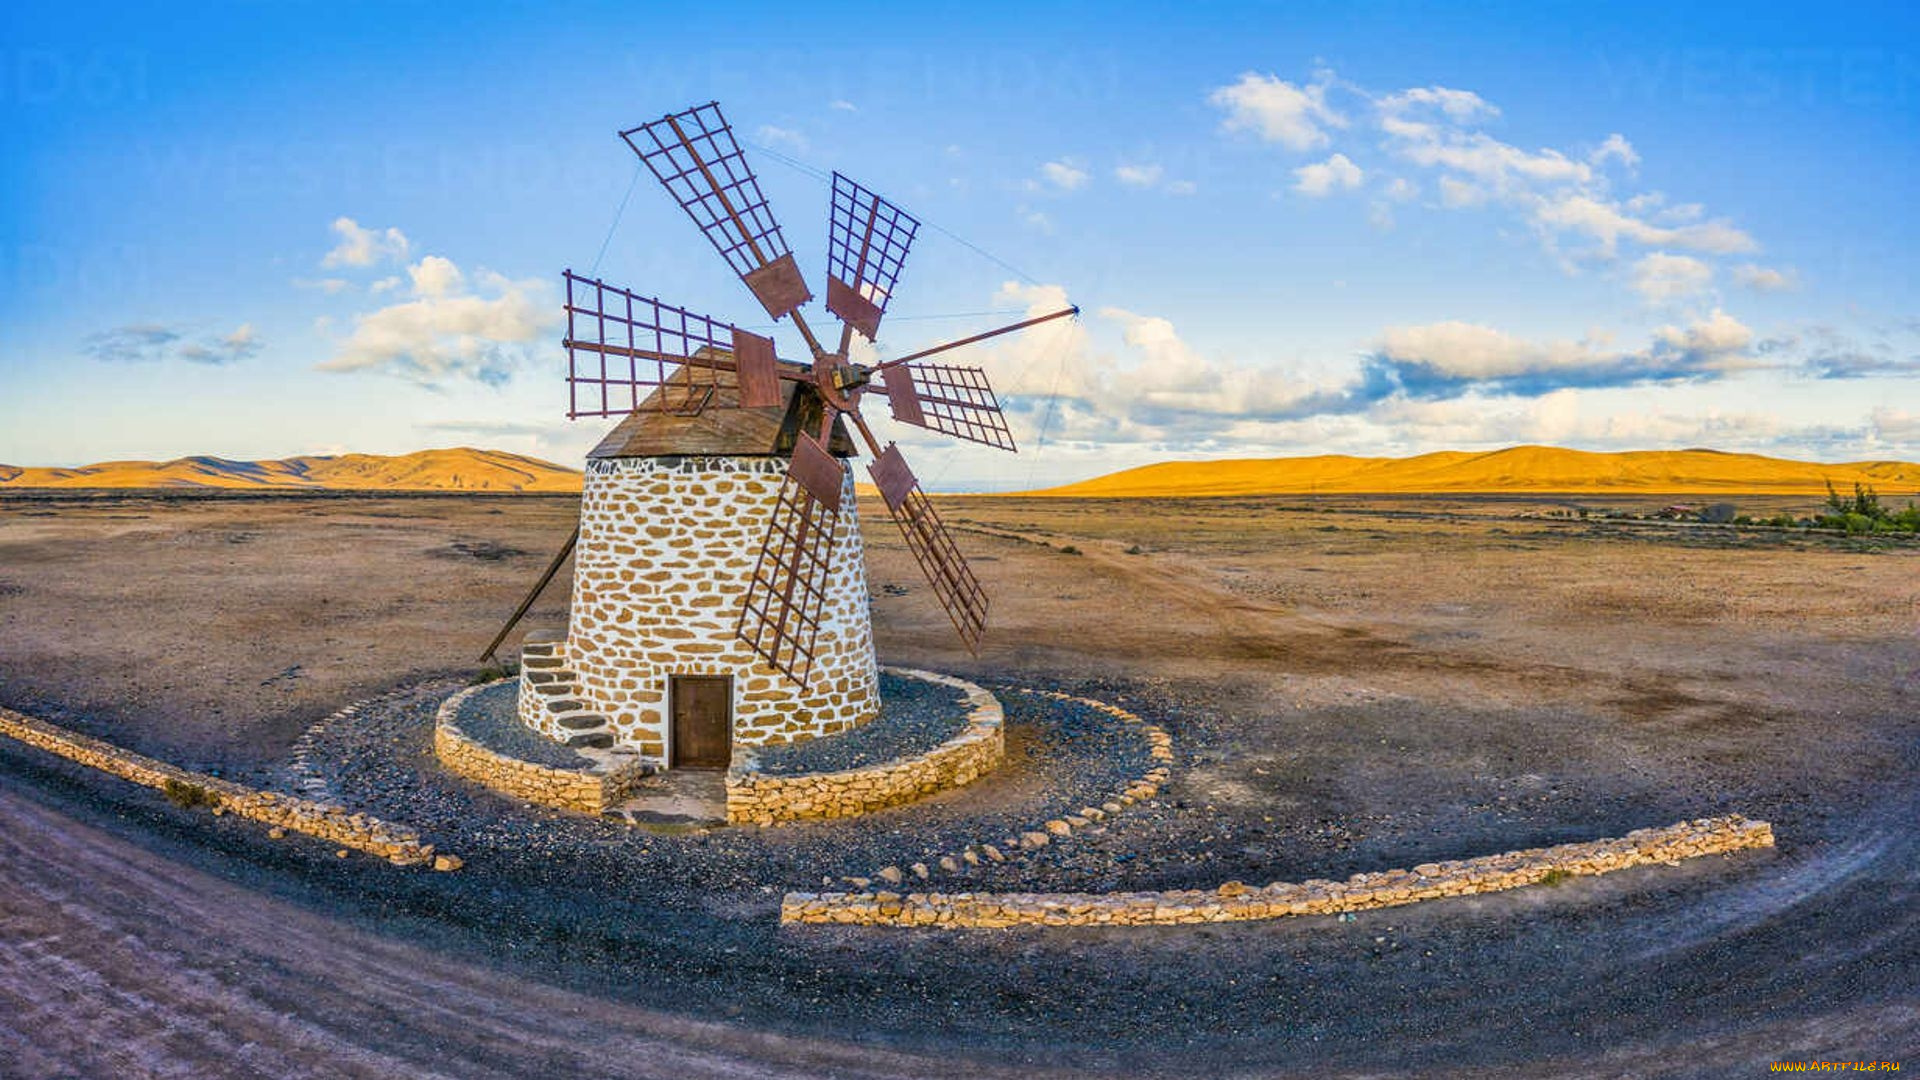 windmill, at, molino, de, tefia, spain, разное, мельницы, windmill, at, molino, de, tefia